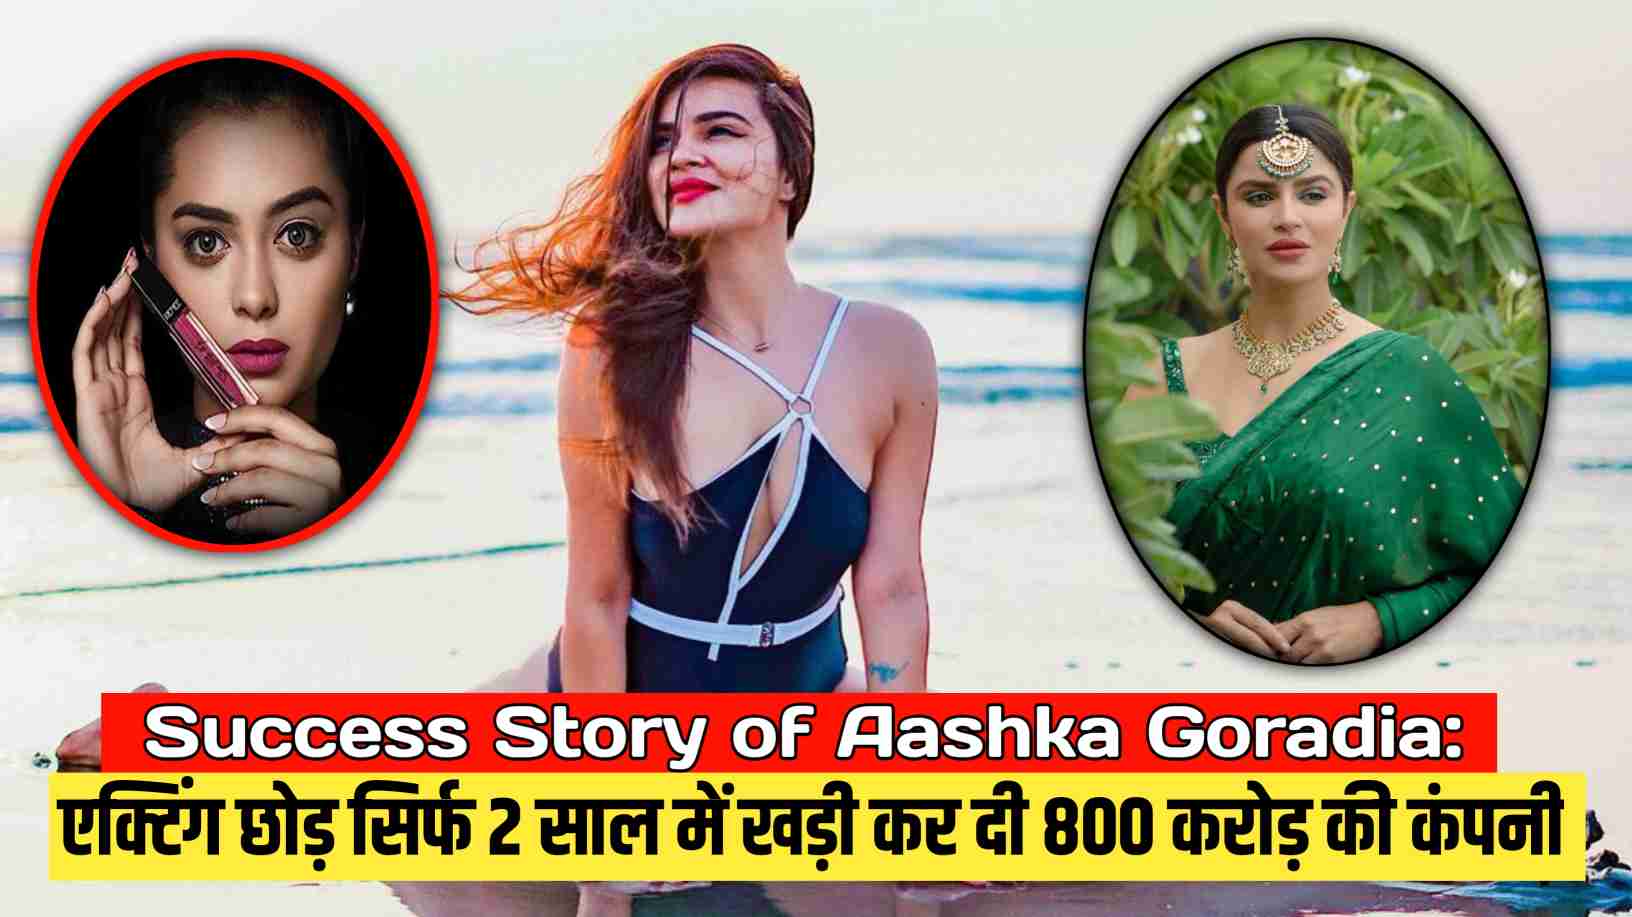 Success Story of Aashka Goradia